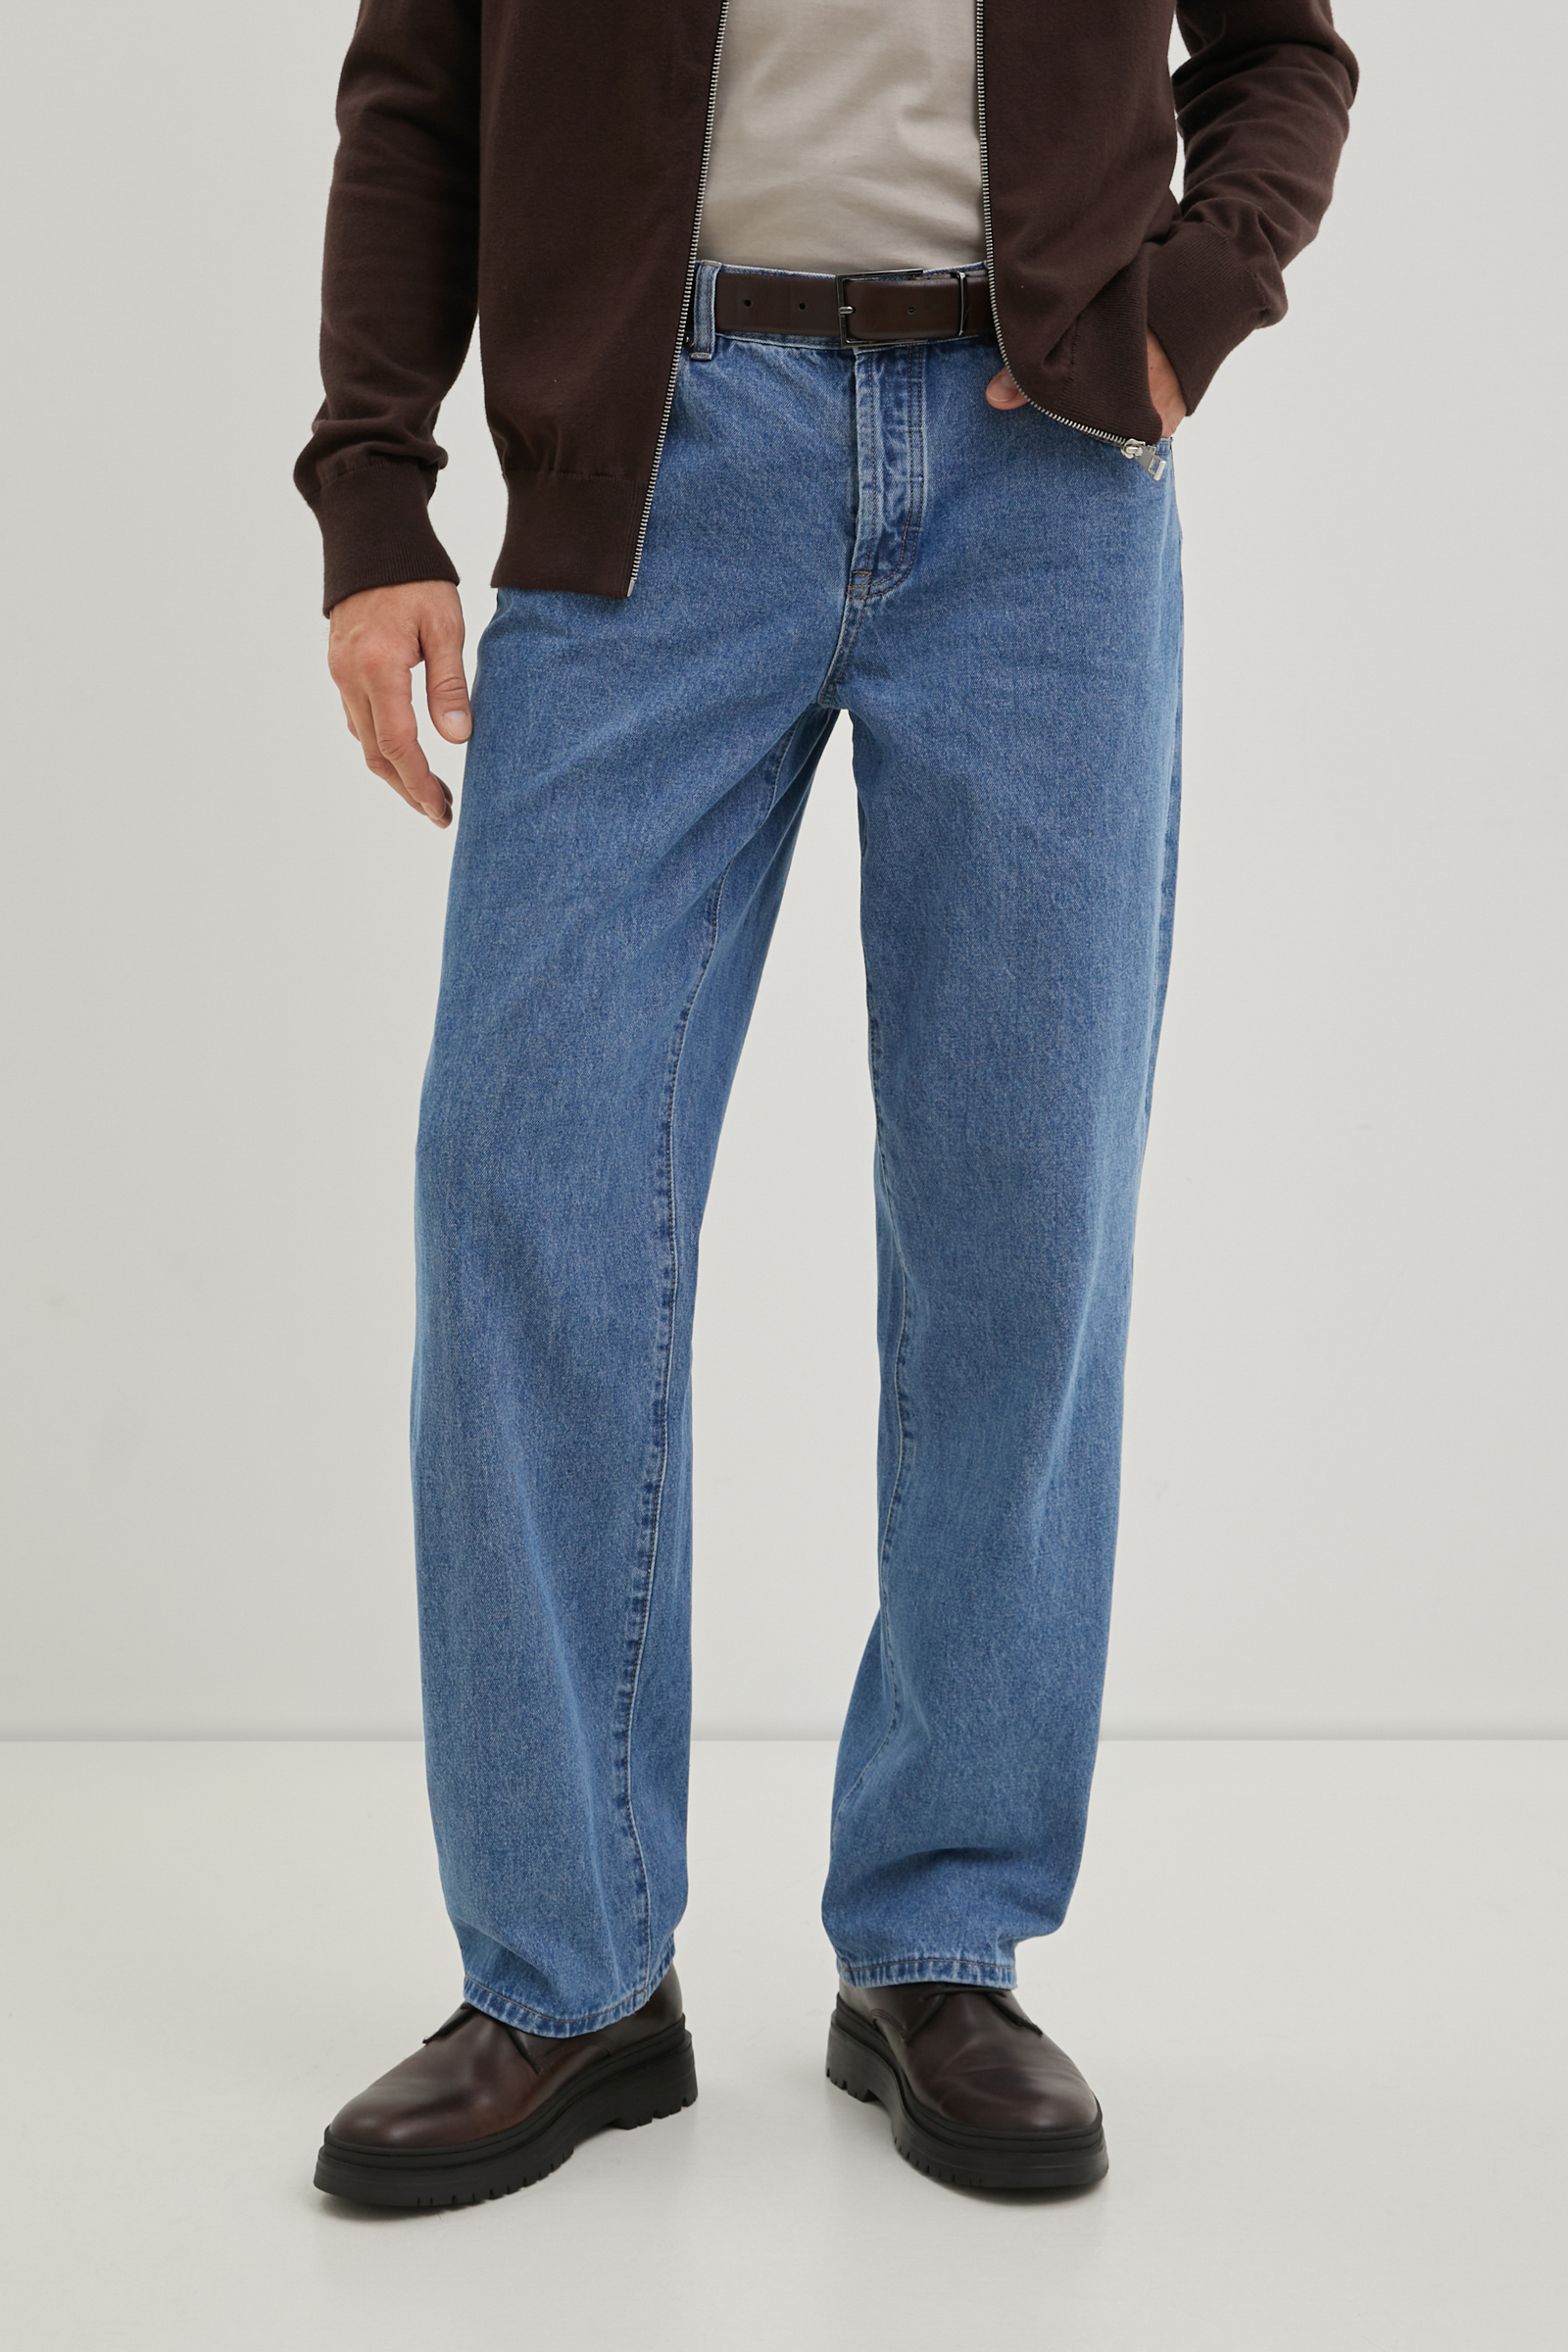 джинсы comfort fit мужские